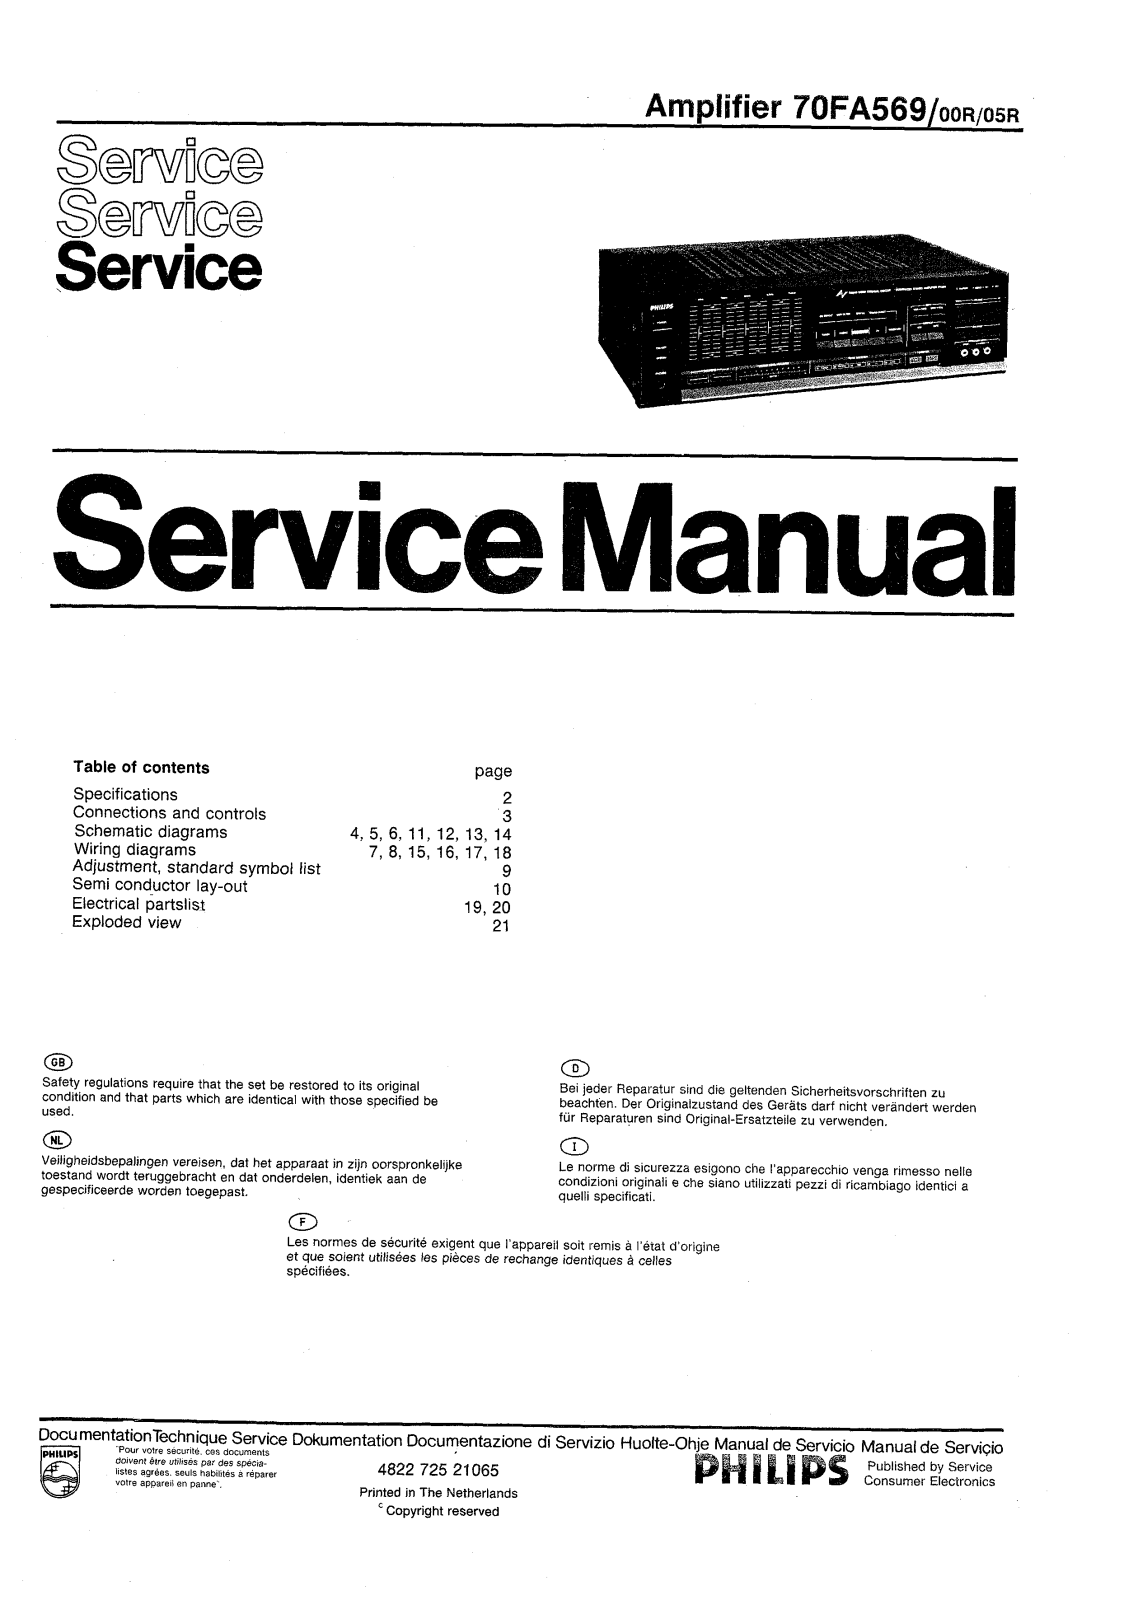 Philips FA-569 Service manual